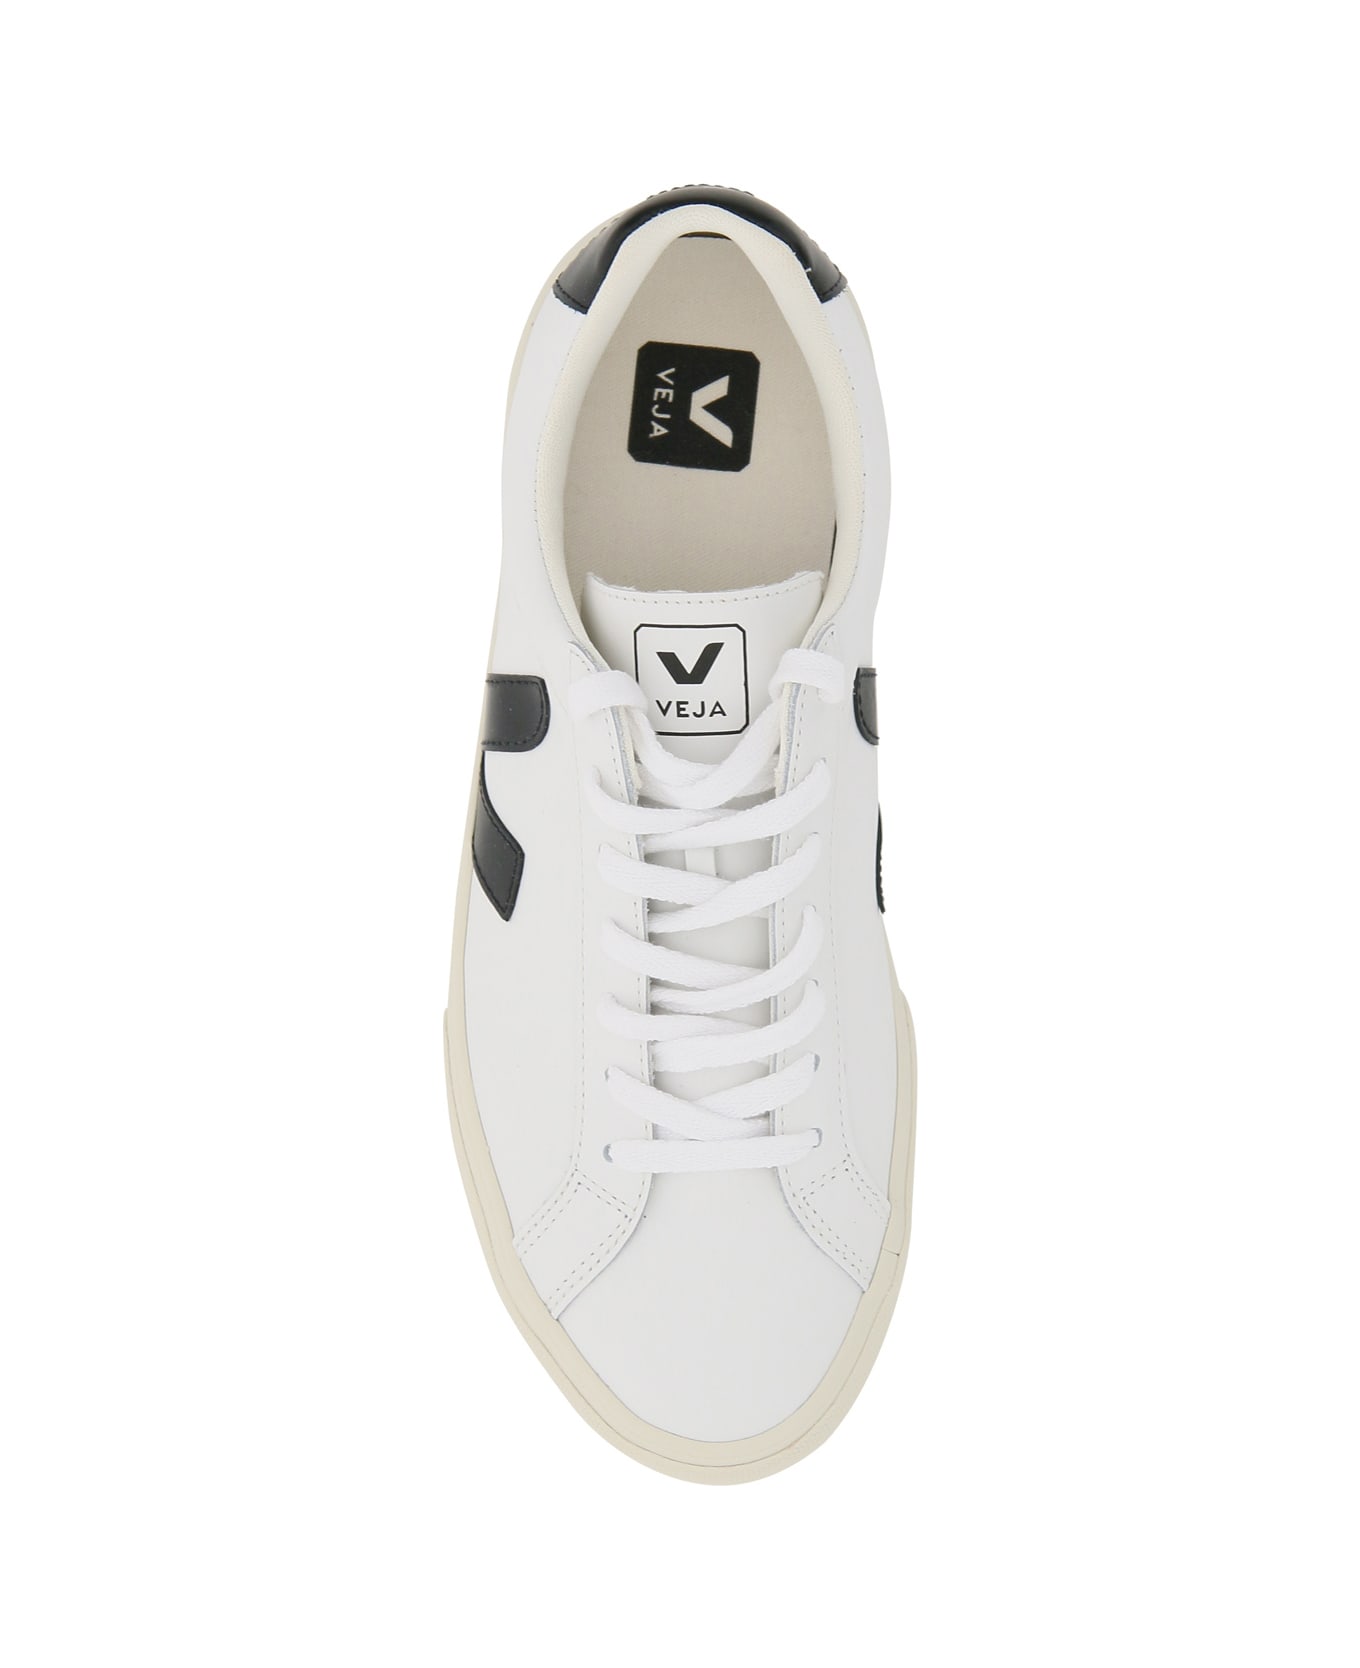 Veja Esplar Leather Sneakers - EXTRA WHITE BLACK (White)